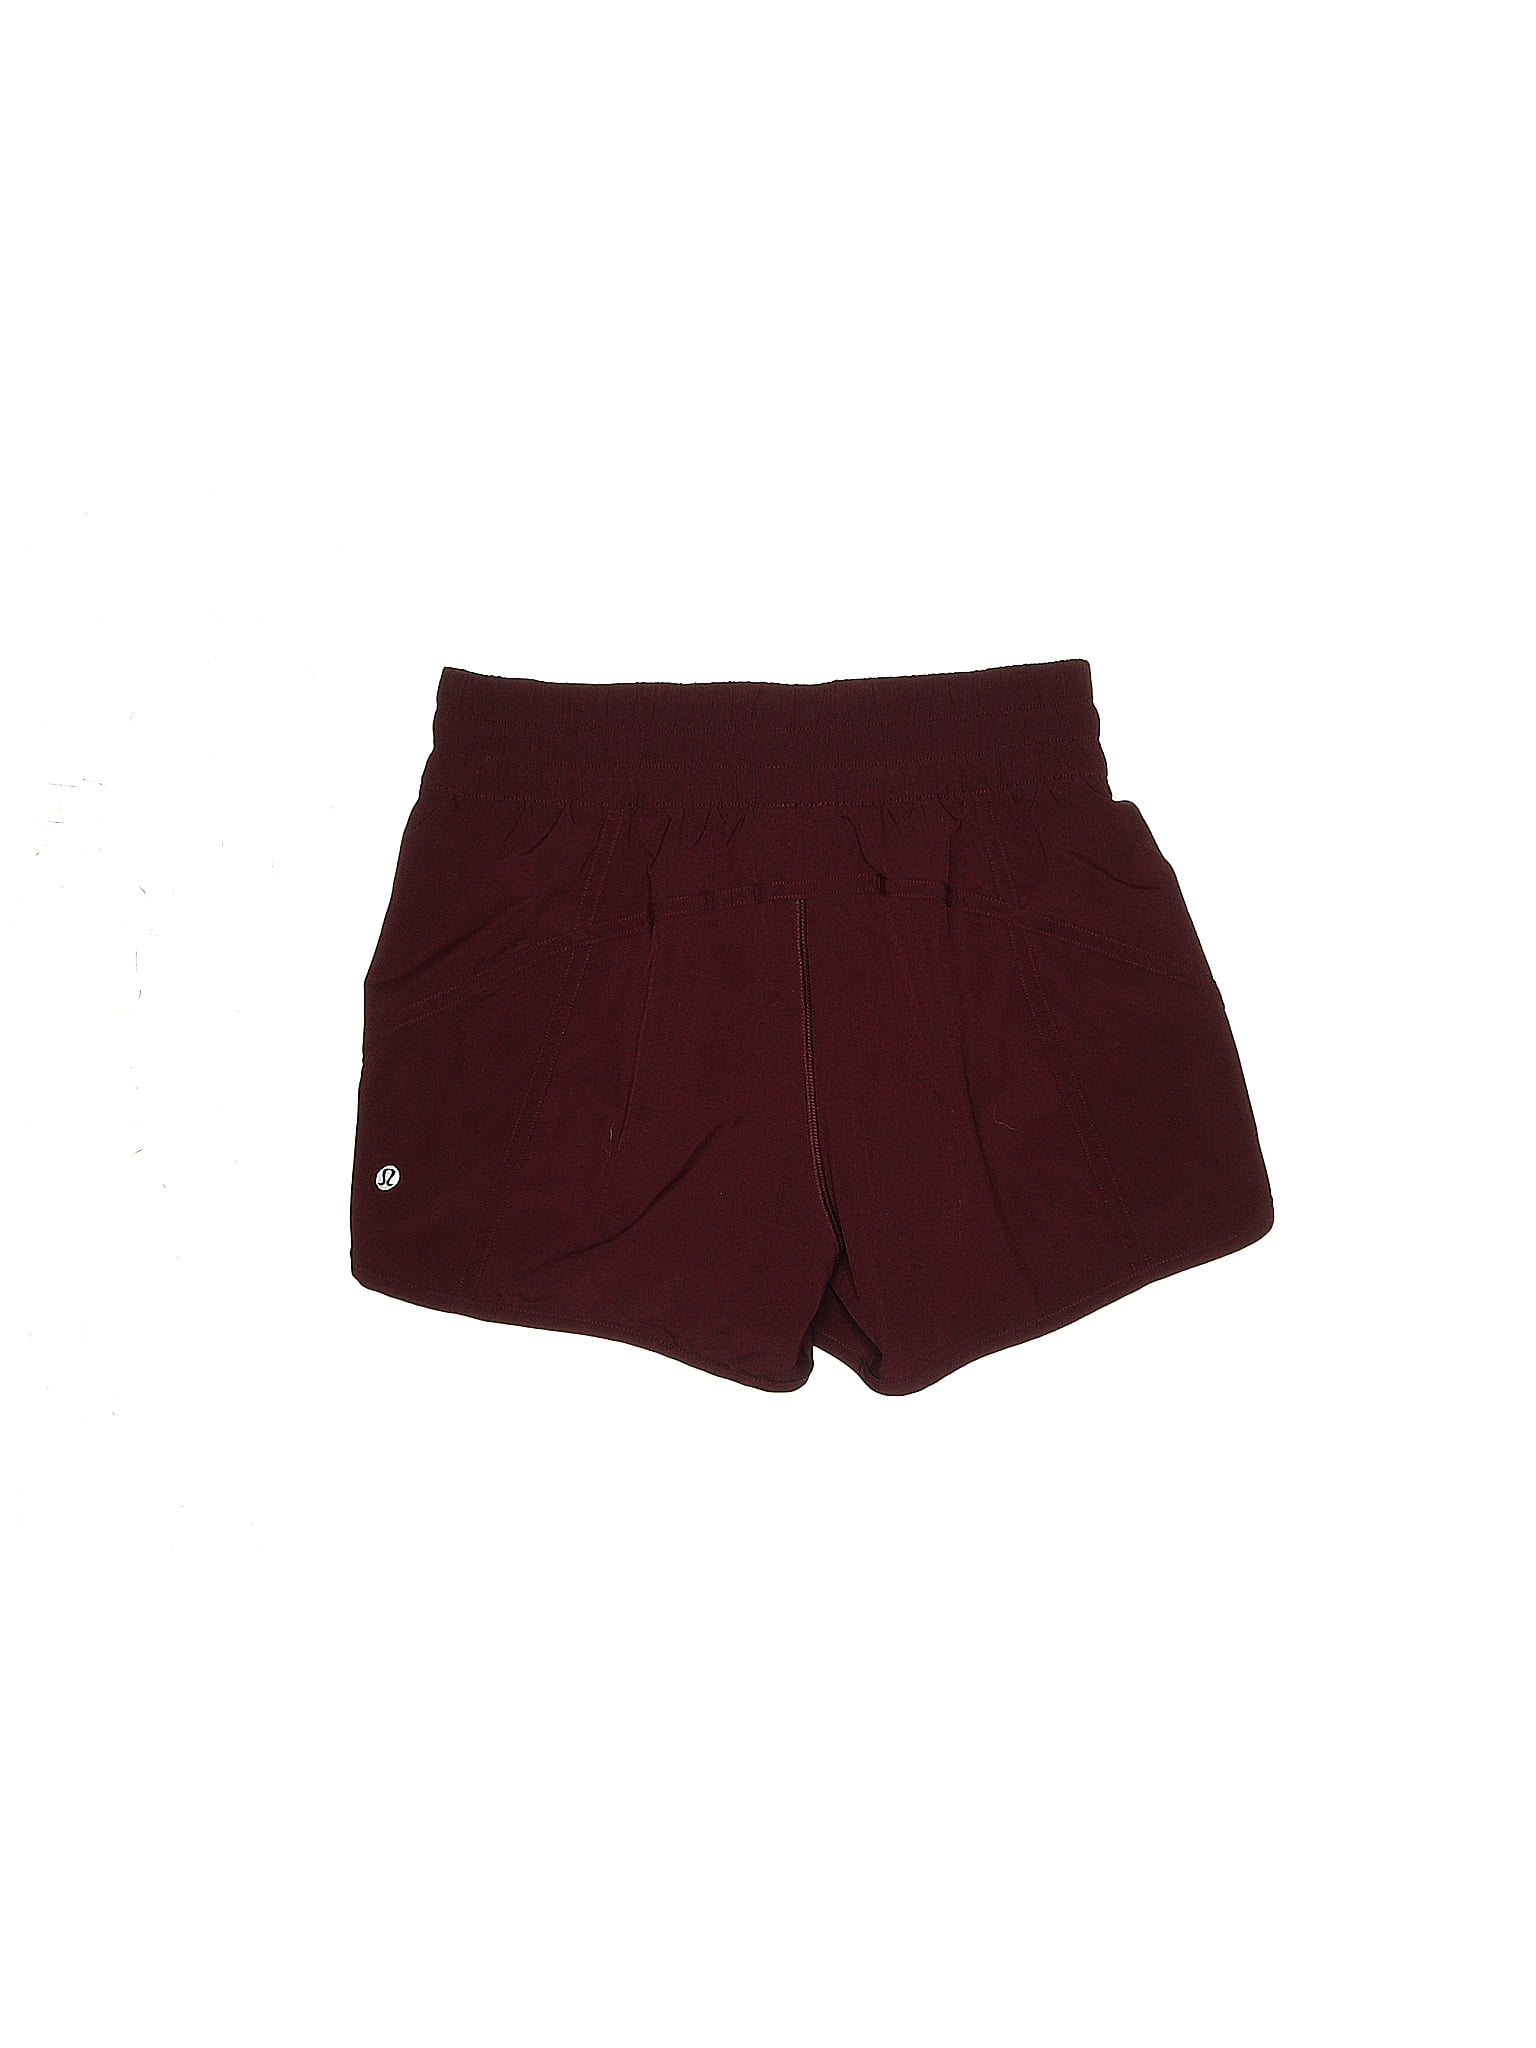 Lululemon Athletica Burgundy Athletic Shorts Size 6 - 41% off